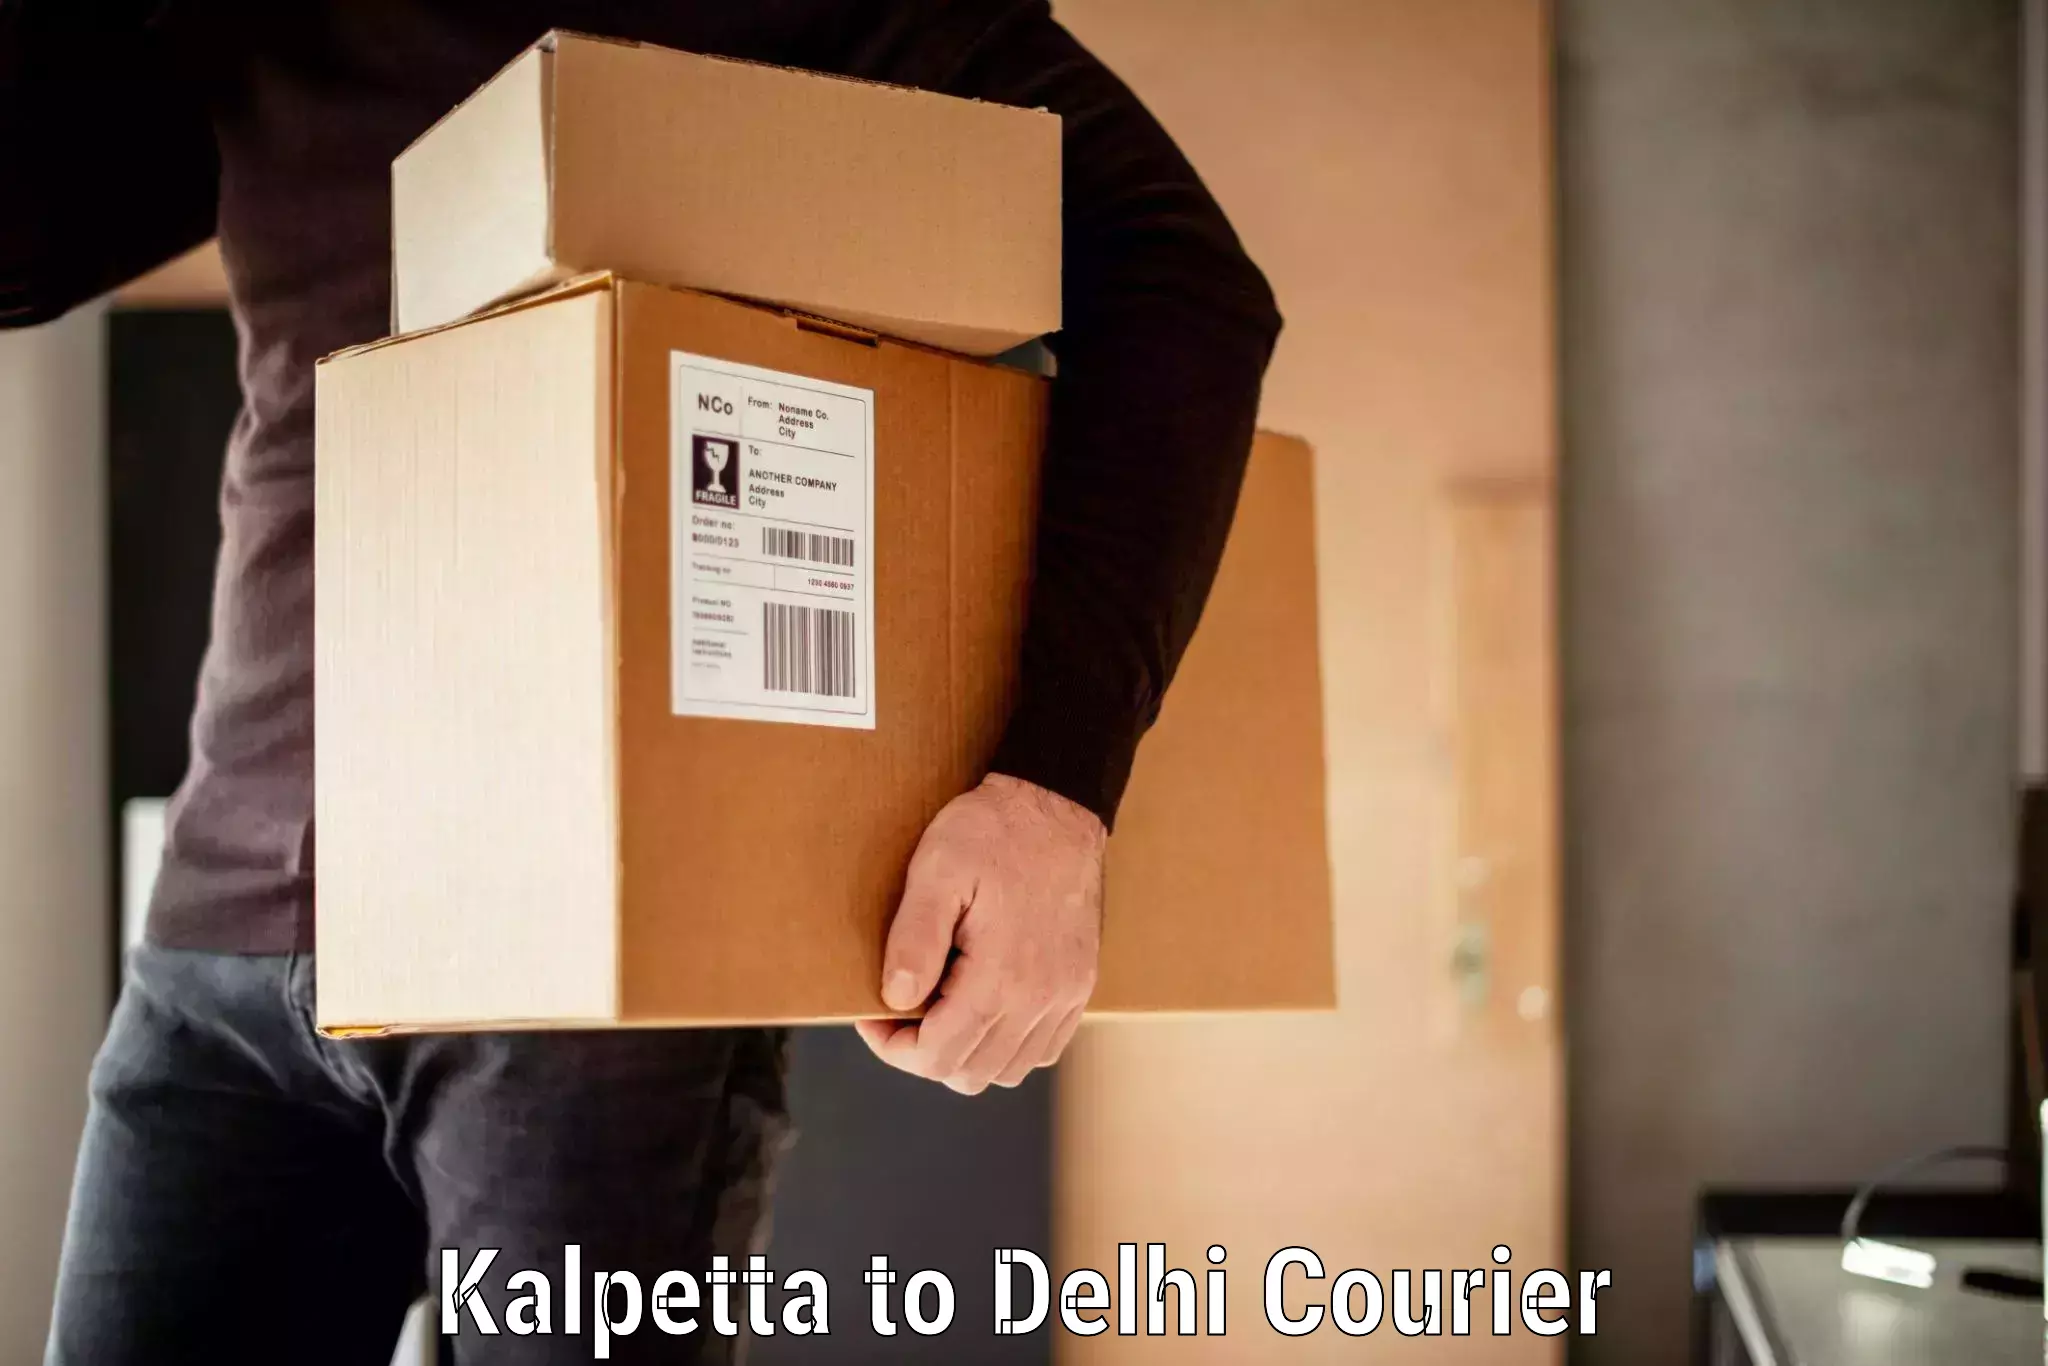 Baggage transport scheduler Kalpetta to NIT Delhi